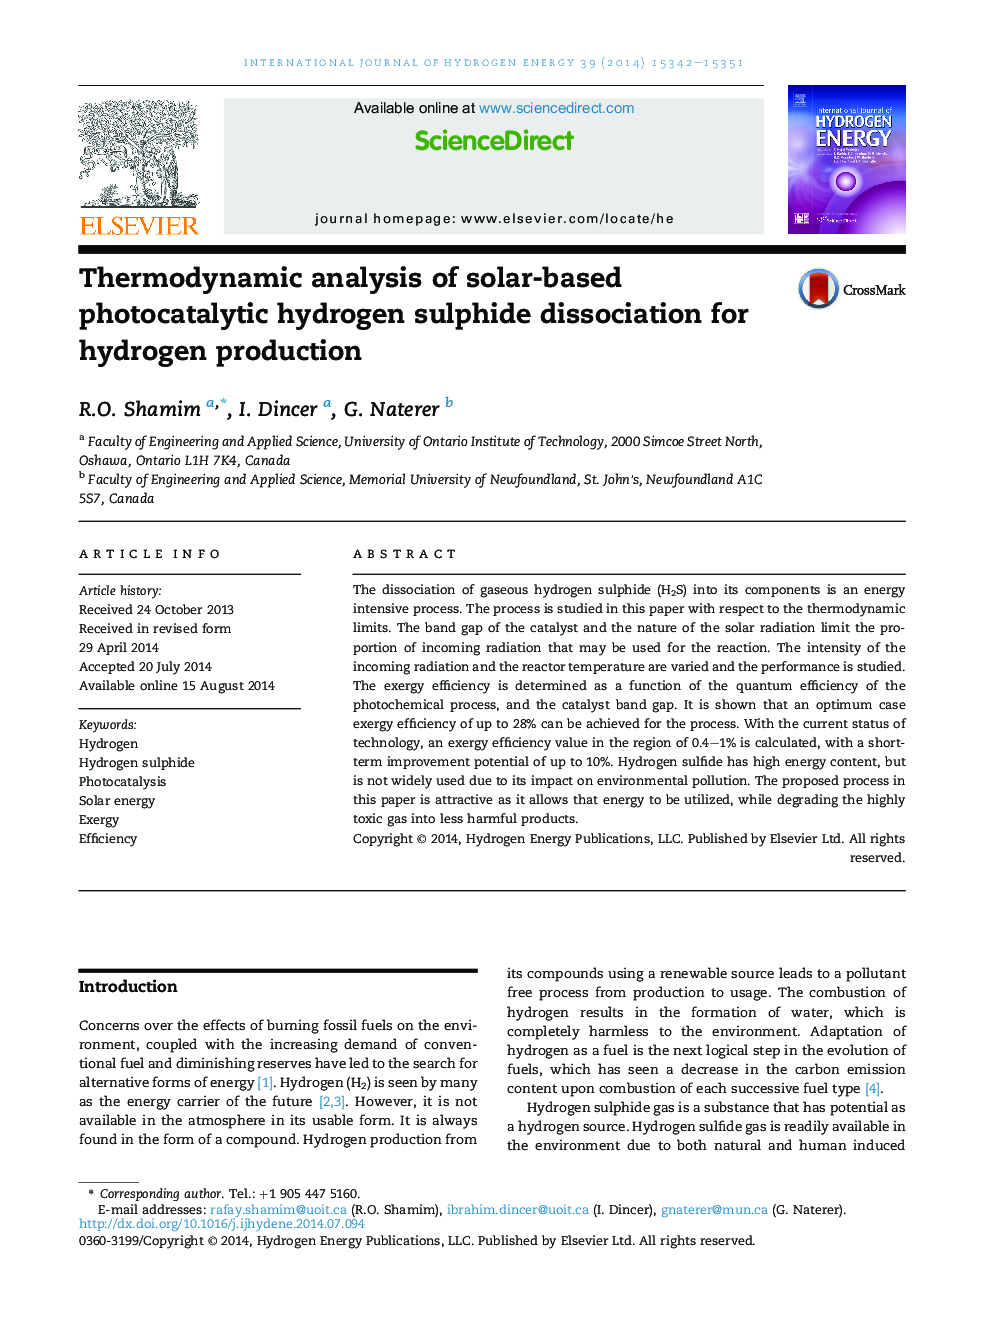 تجزیه و تحلیل ترمودینامیکی از تلفیق هیدروژن سولفید فتوکاتالیتی خورشیدی برای تولید هیدروژن 